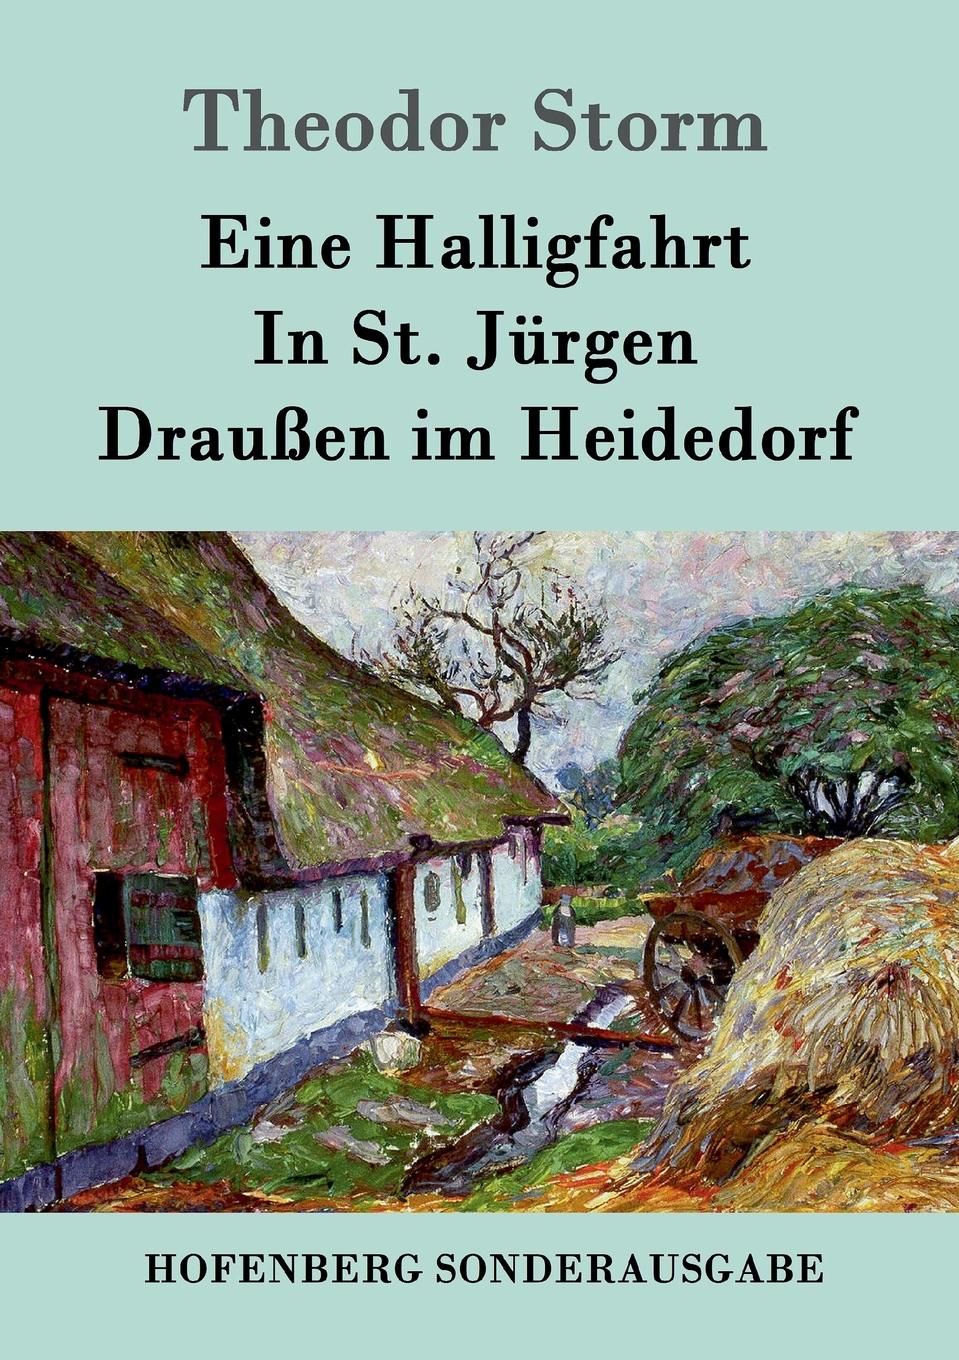 Theodor Storm Eine Halligfahrt / In St. Jurgen / Draussen im Heidedorf